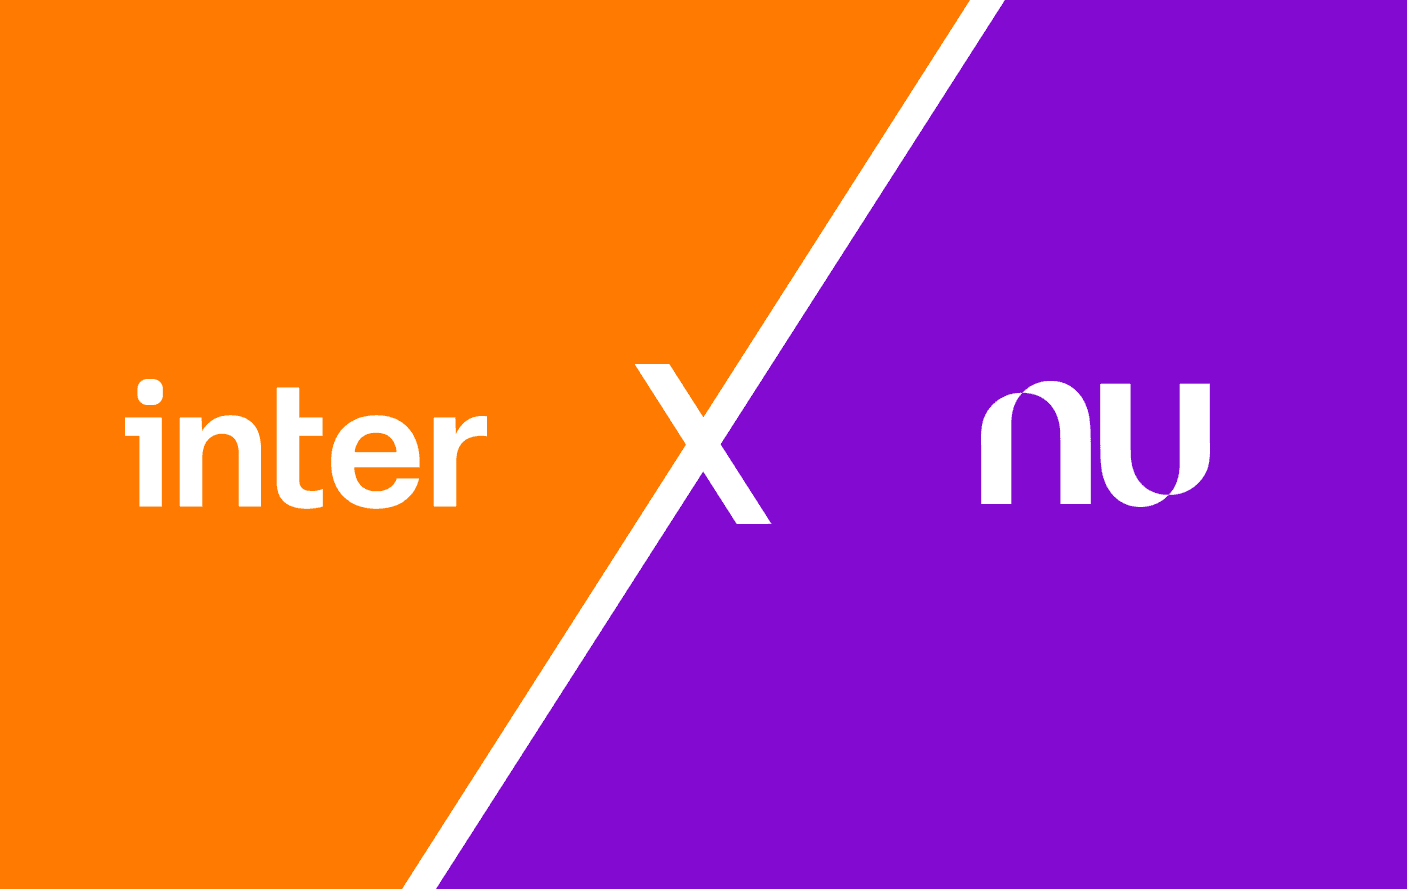 Arte com os logos do Banco Inter (em laranja) e Nubank (em roxo) divididos por um sinal de versus branco no centro da tela.